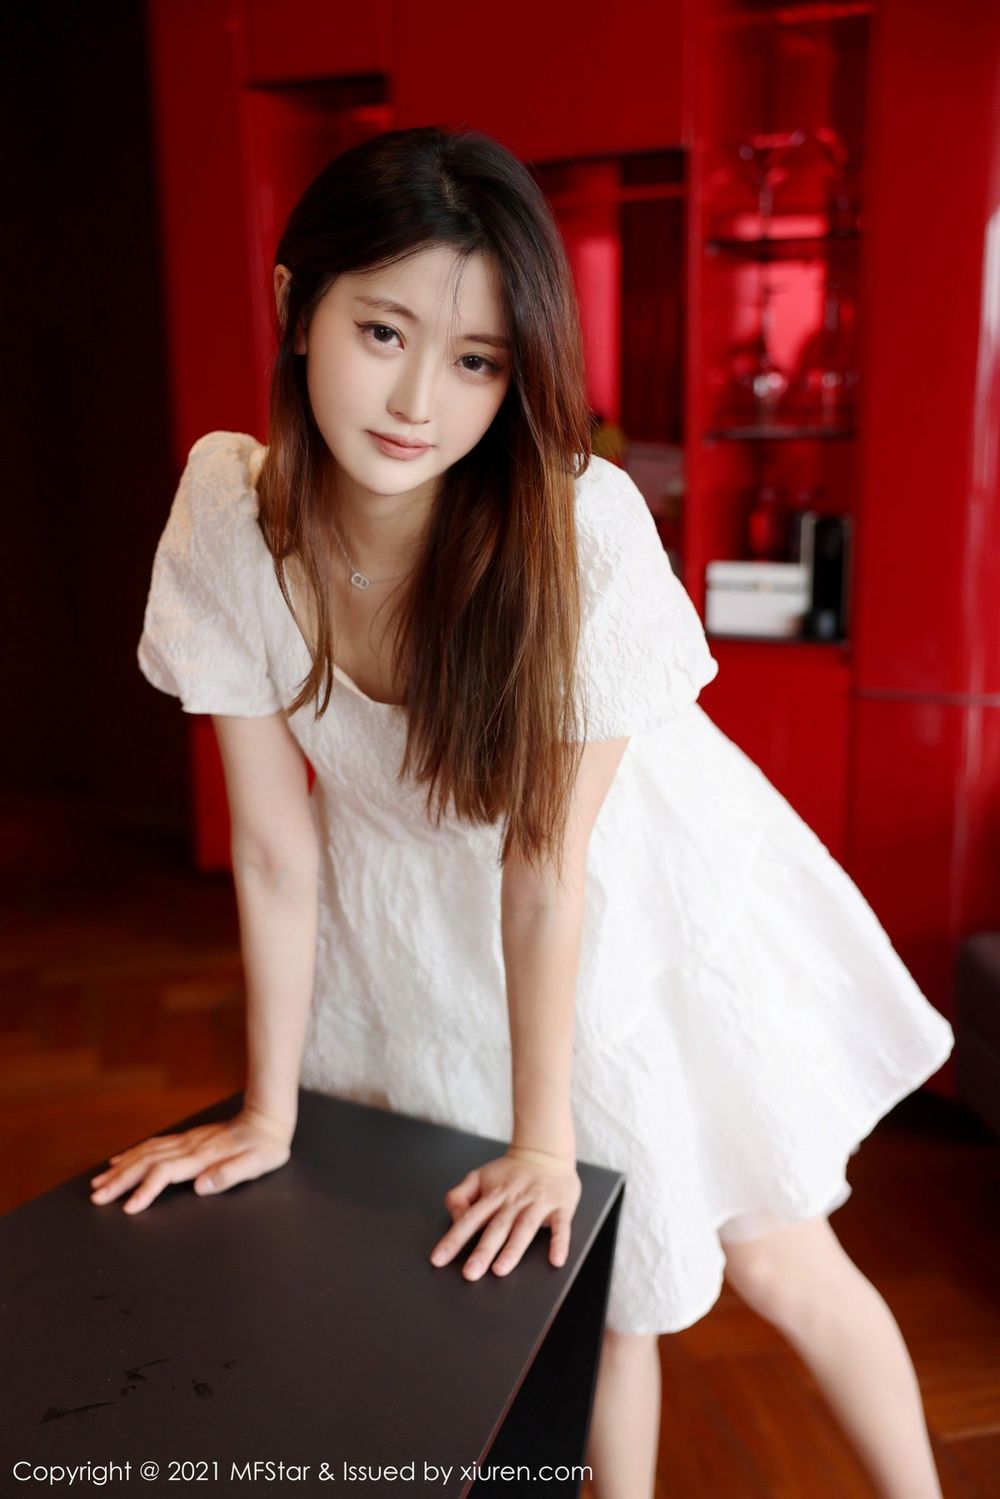 新人模特苏西-susie洁白连衣裙与丝袜美腿系列写真